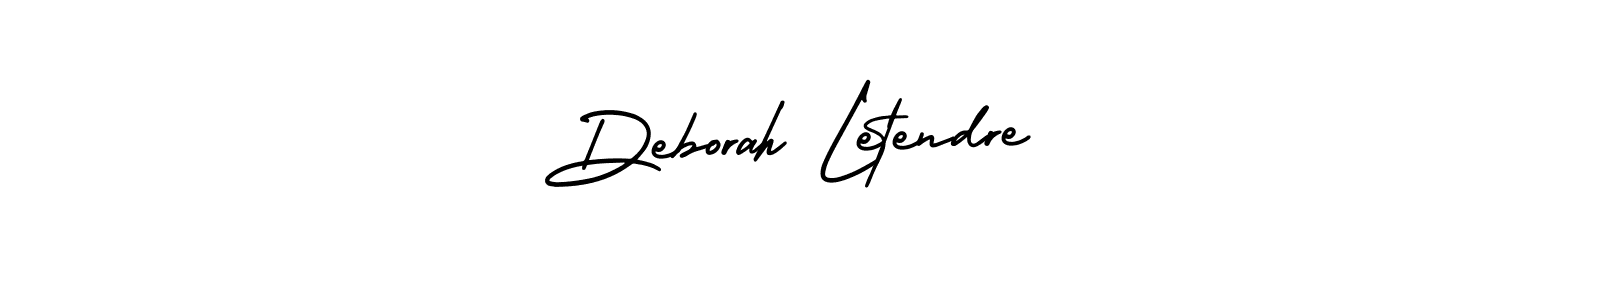 How to Draw Deborah Letendre signature style? AmerikaSignatureDemo-Regular is a latest design signature styles for name Deborah Letendre. Deborah Letendre signature style 3 images and pictures png